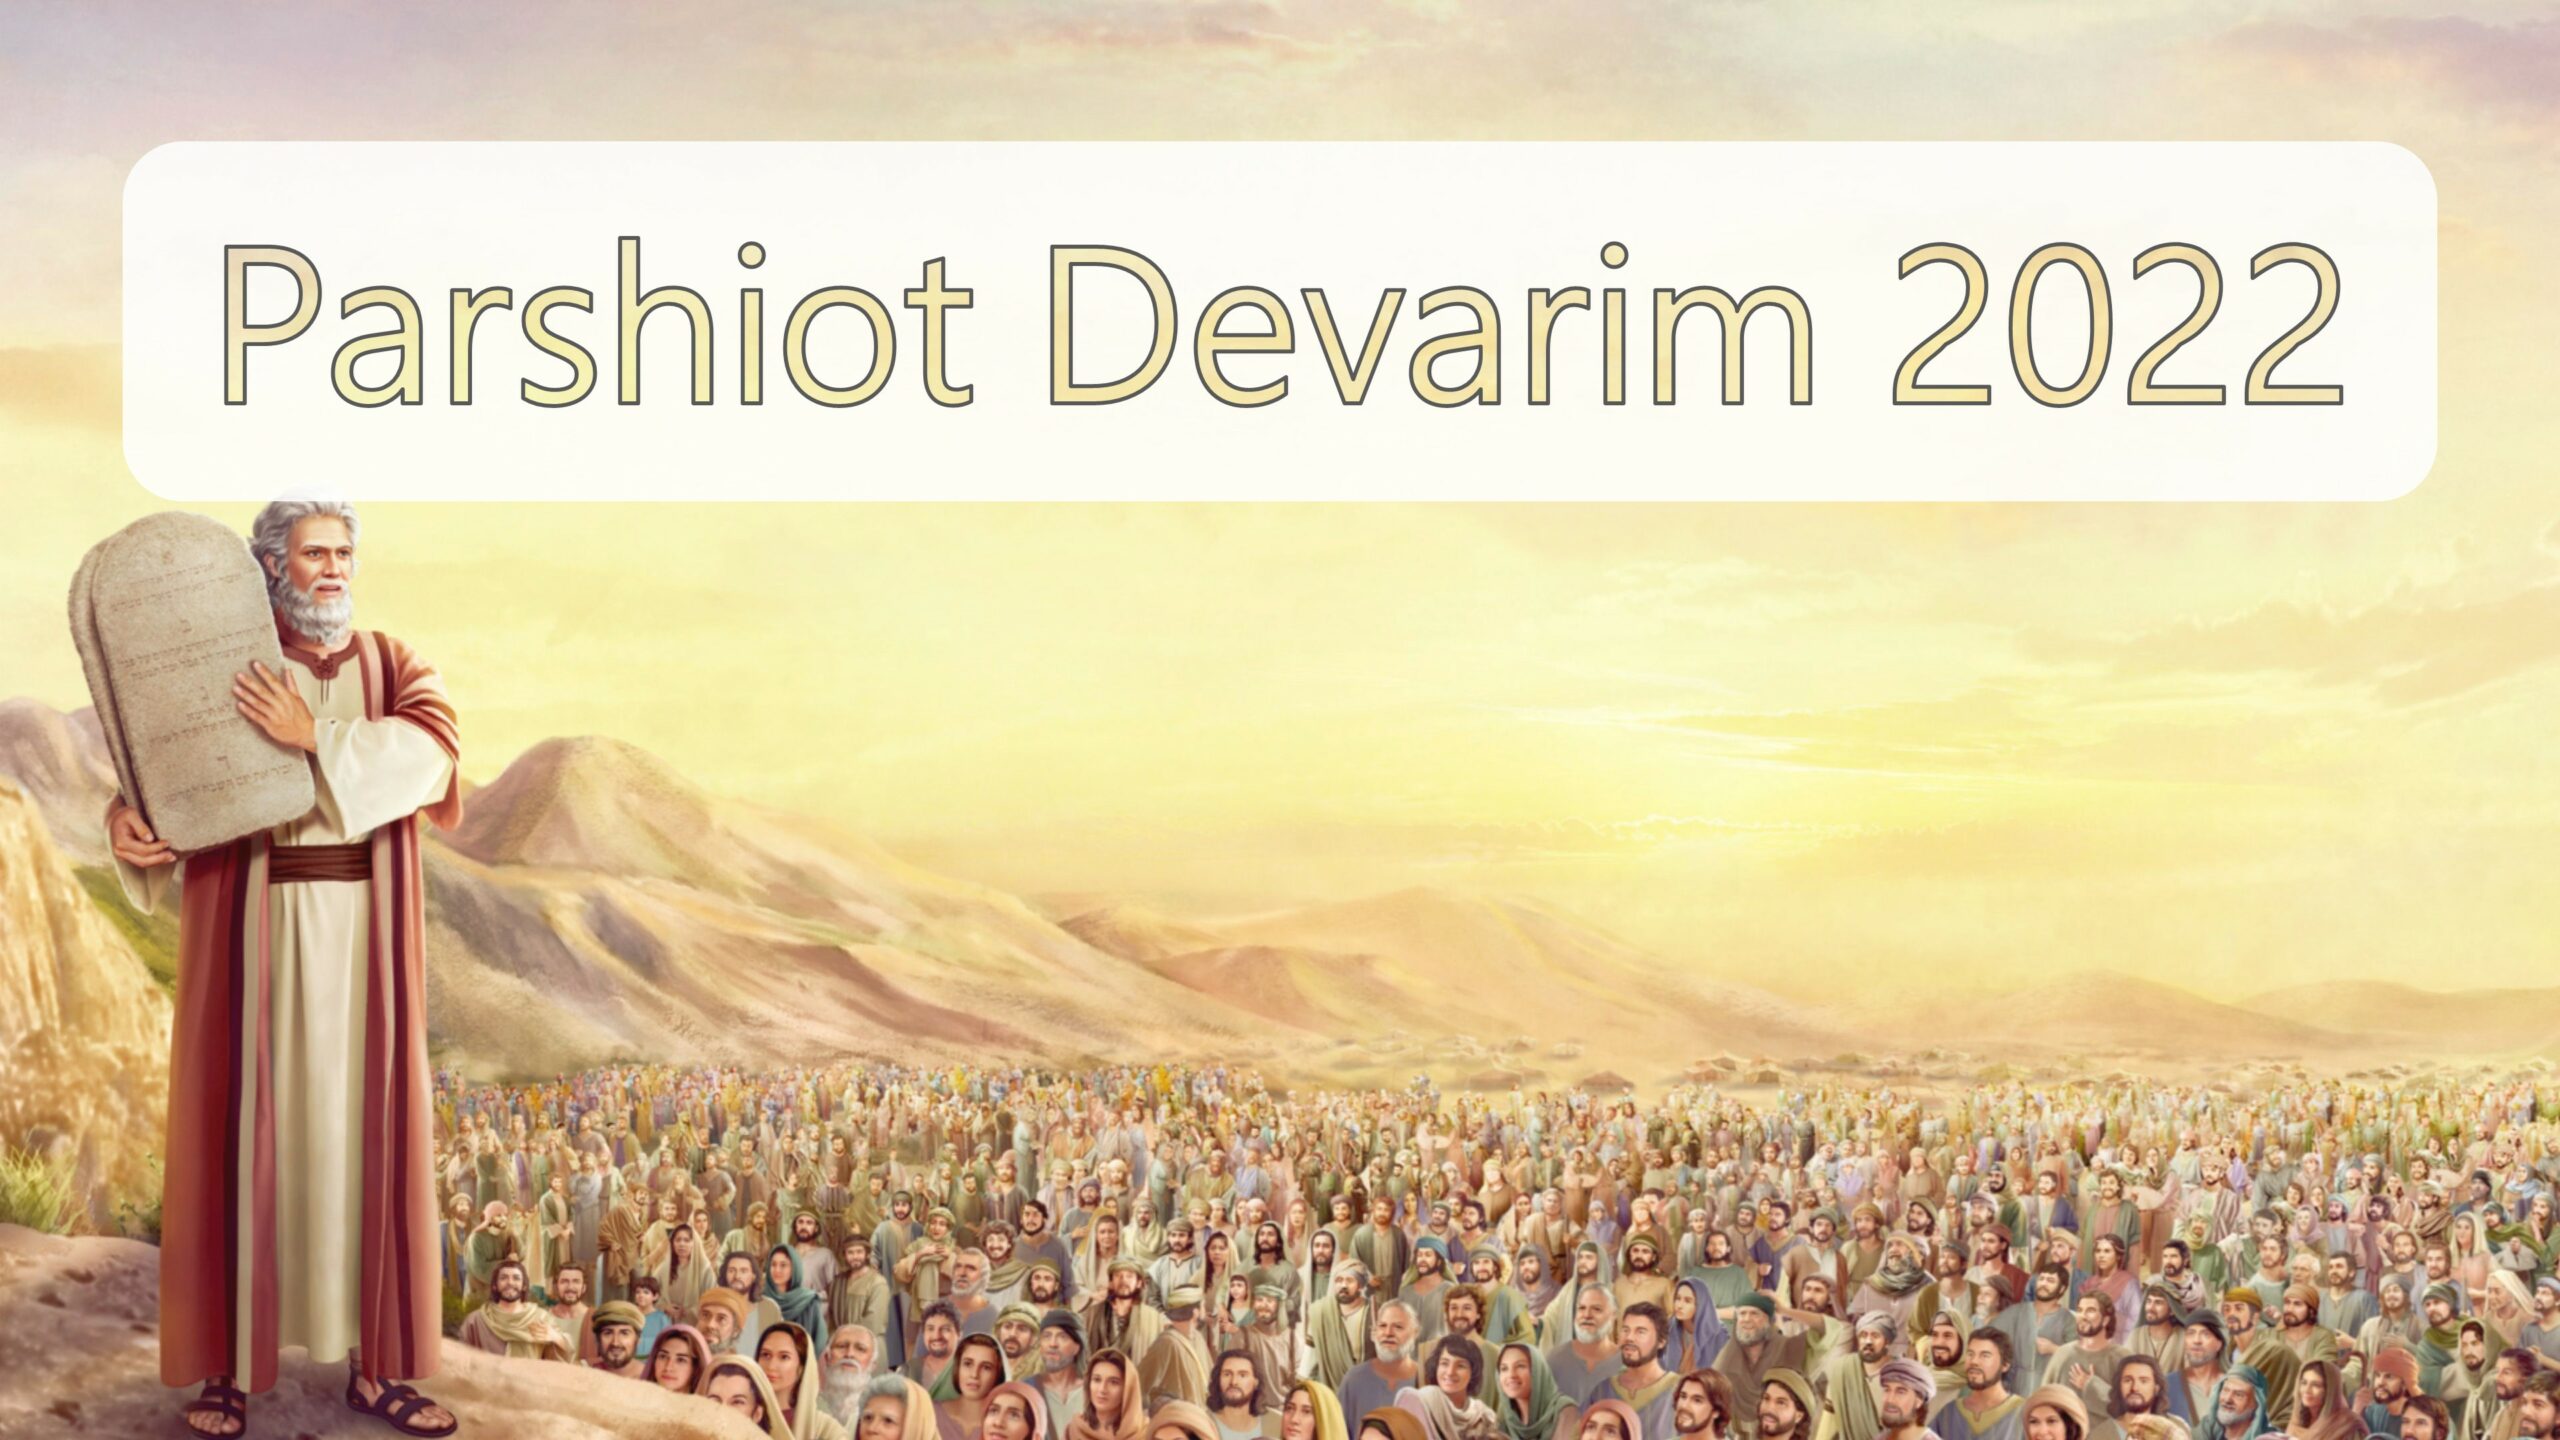 Parasha Devarim 2022